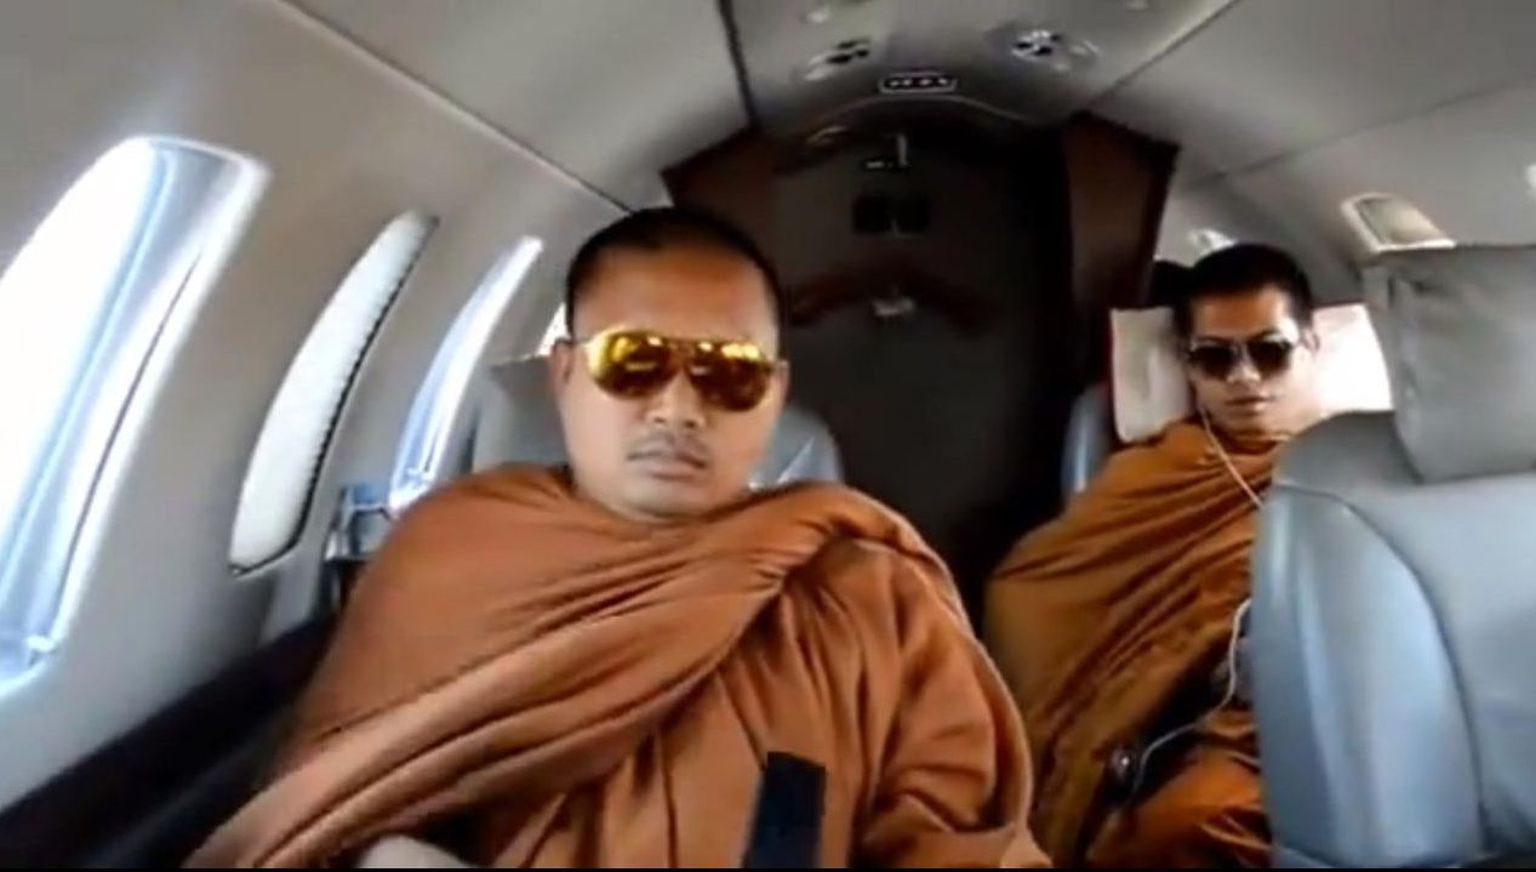 Buda munkade luksuslik elustiil sattus kriitika alla